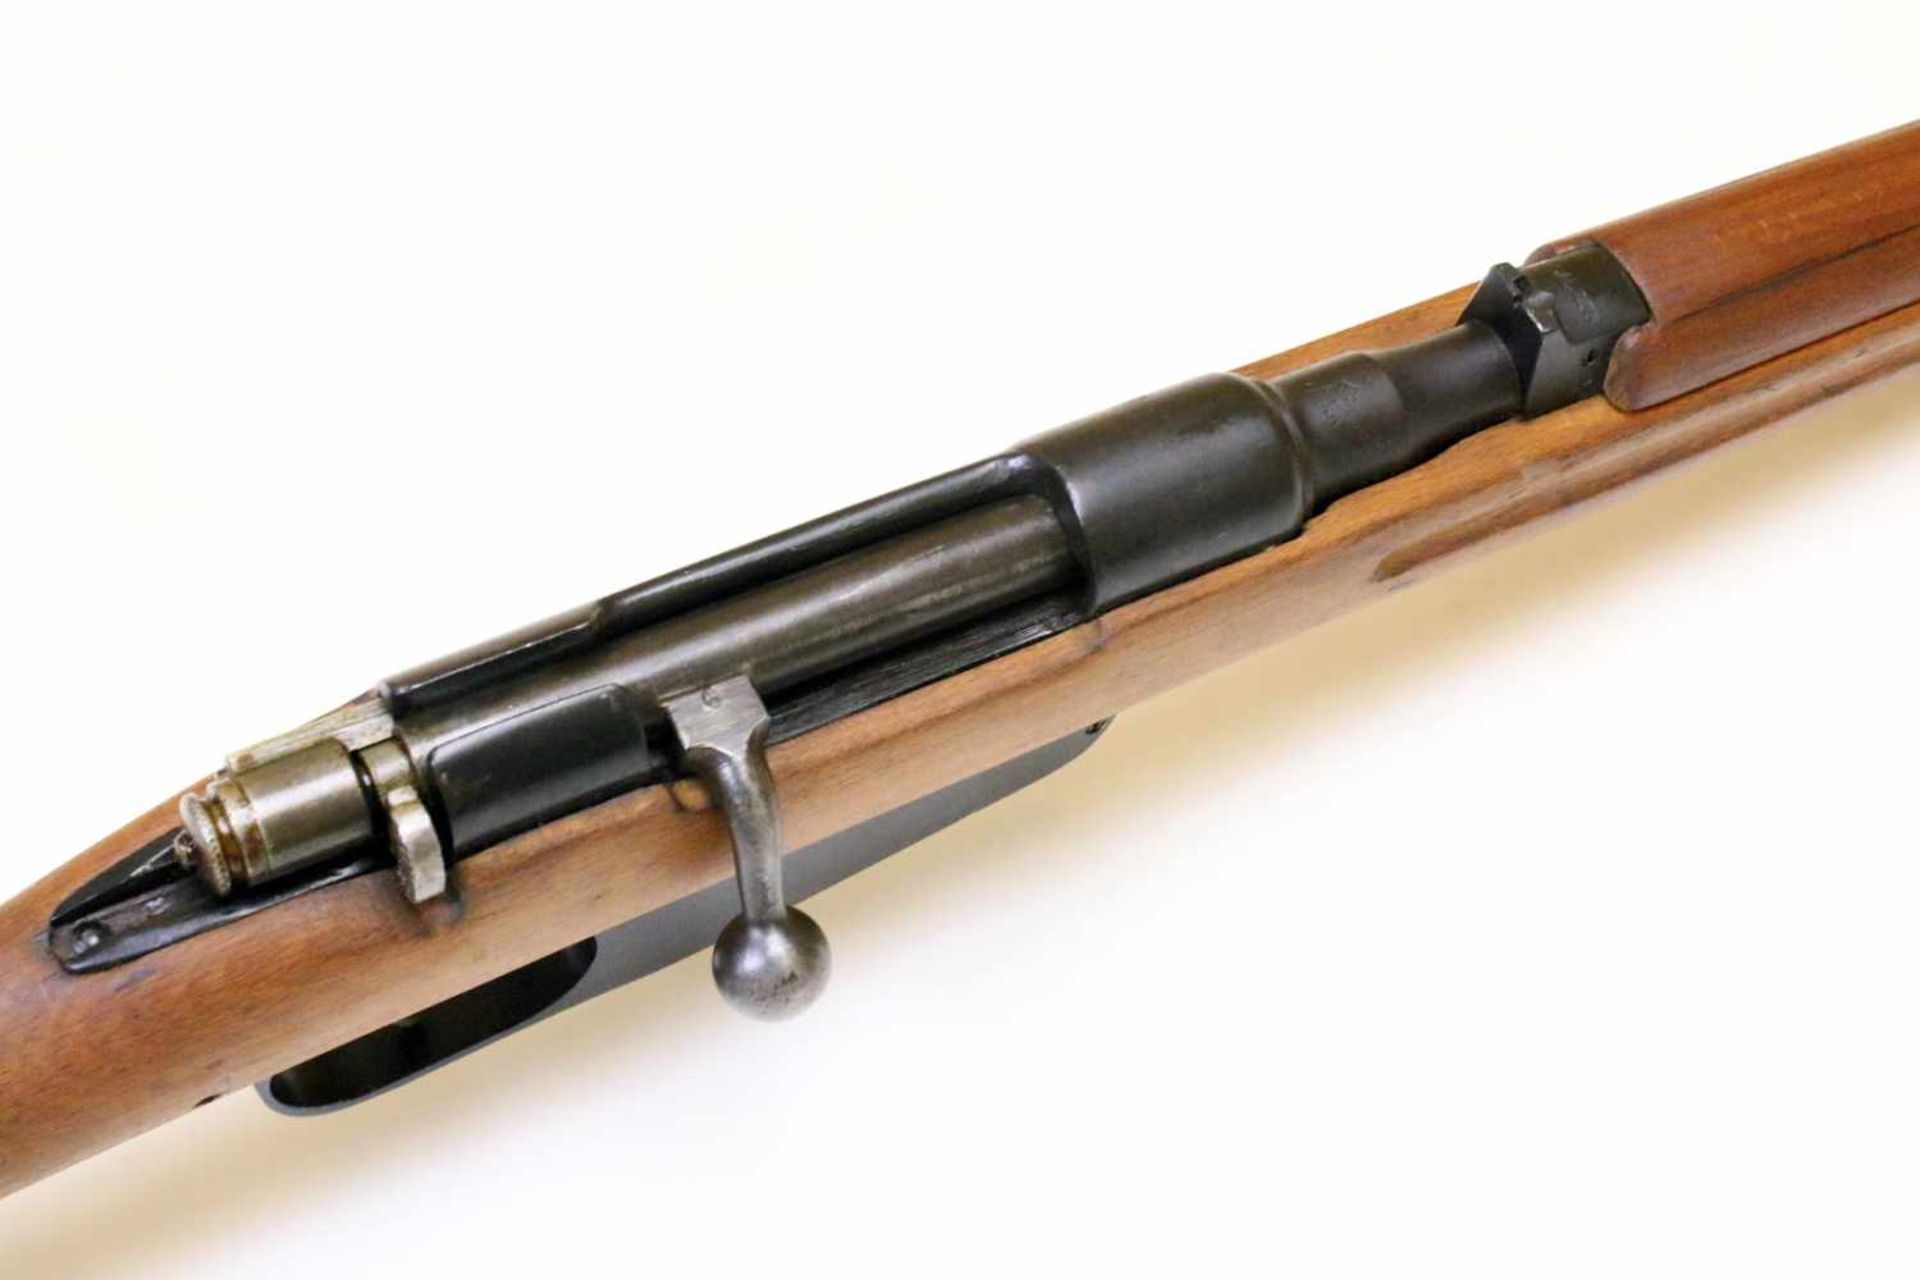 Karabiner Carcano M1938 Cal. 7,35mm carc., Lauf blank, Nr. Y871. Waffe gefertigt 1939 in Terni. - Bild 3 aus 12